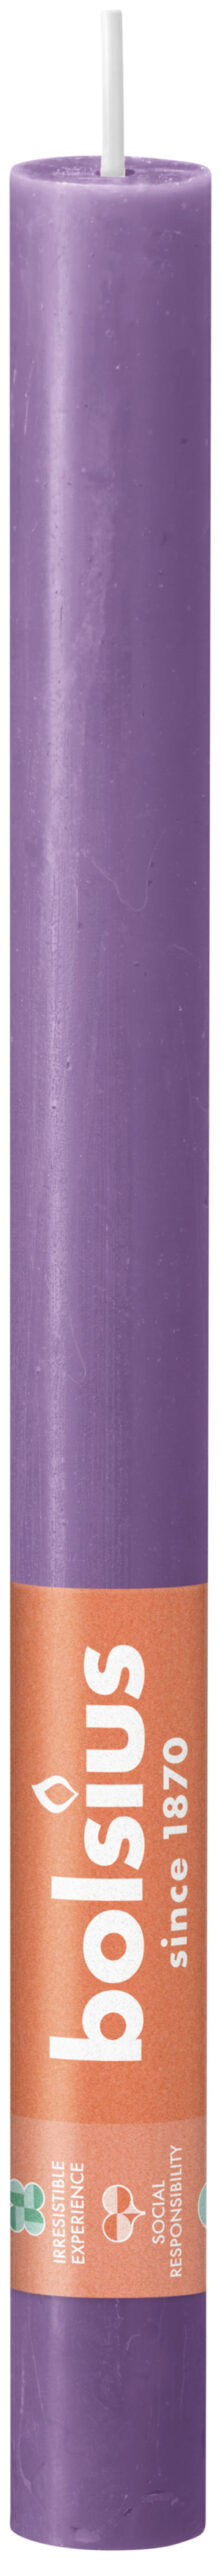 Bolsius tafelkaars rustiek vibrant violet